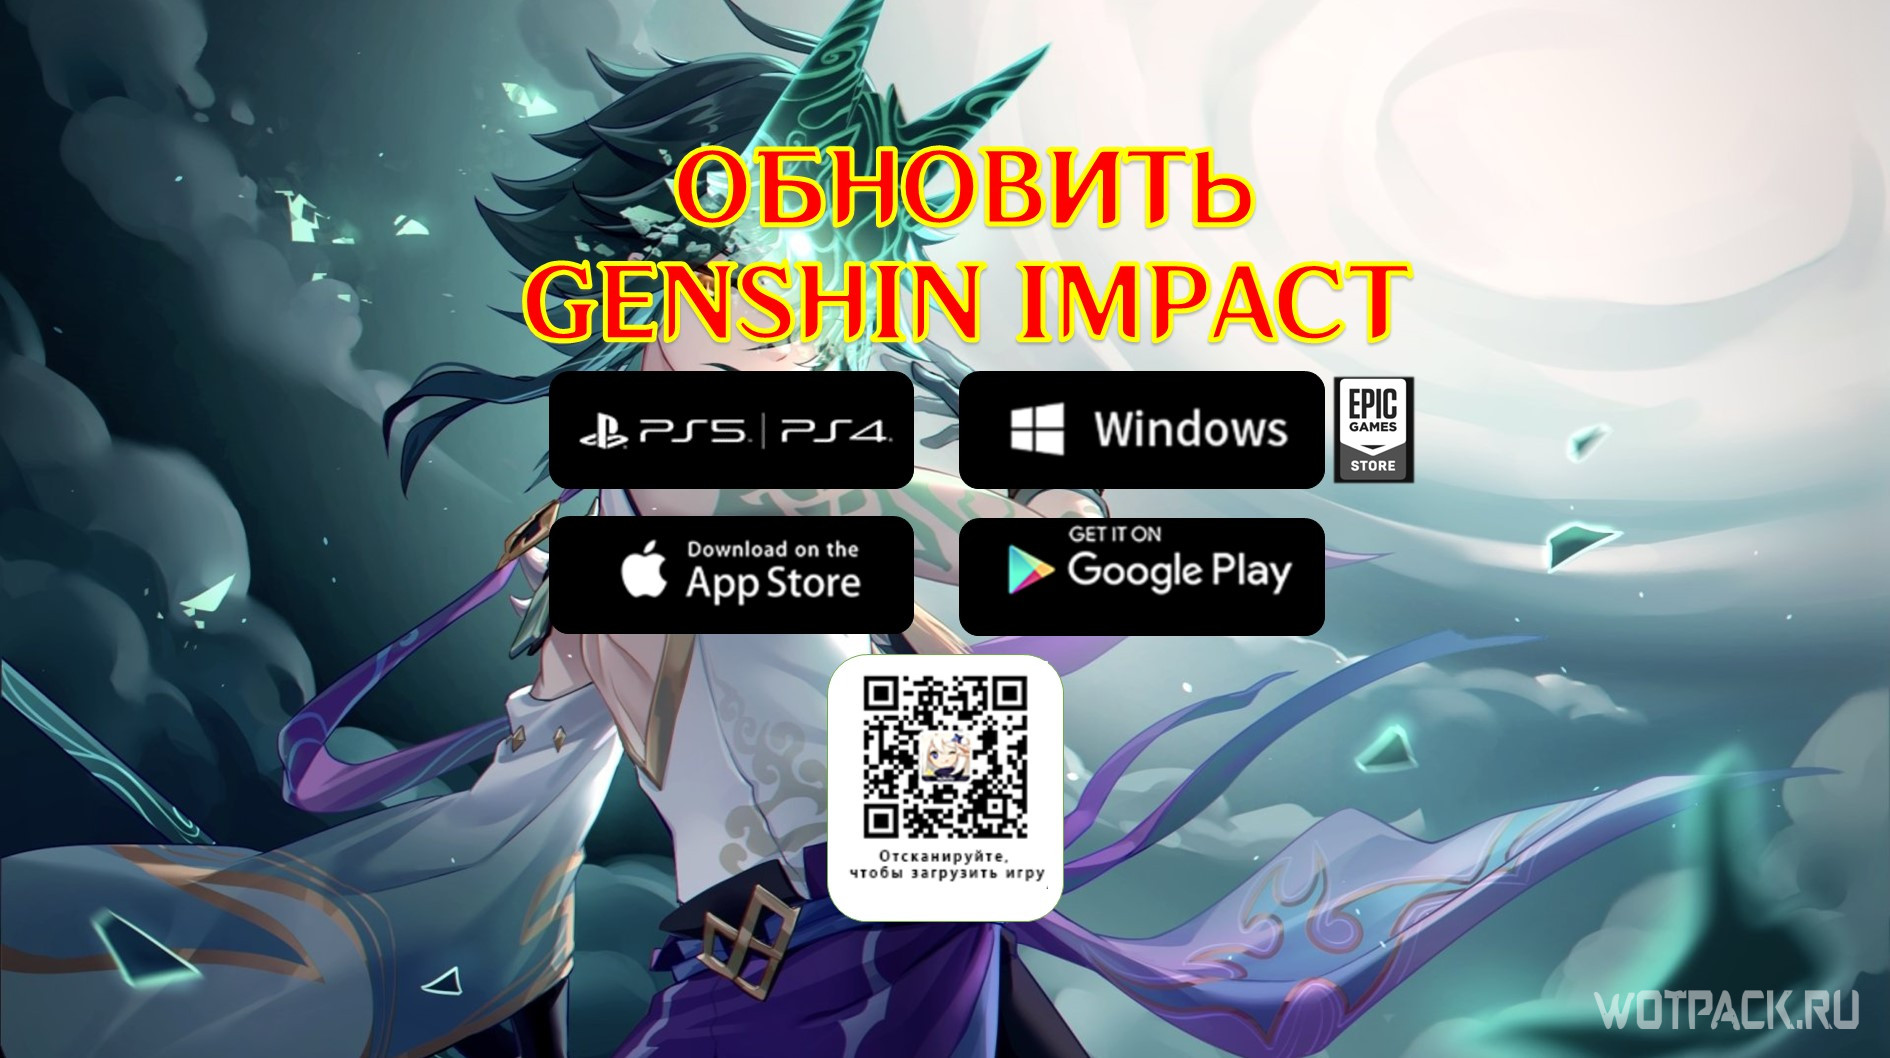 Codashop - Em Genshin Impact você joga no celular, no PC, no PS4 e muito  mais! Se quiser sair na frente e garantir um personagem top logo de cara,  compre seus Cristais